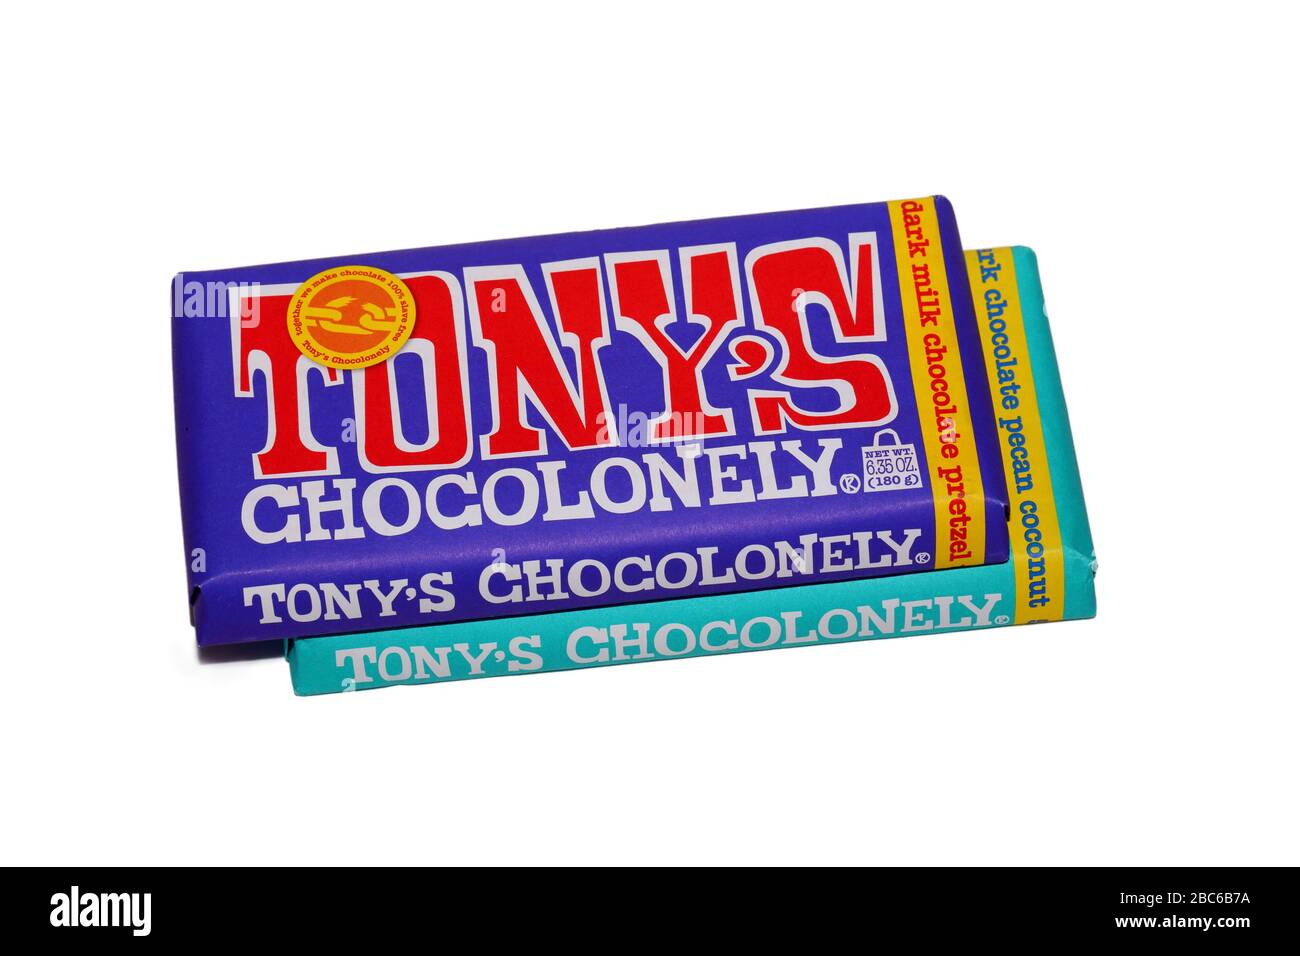 Bars de Tony's Chocotonnely barres de chocolat isolées sur un fond blanc. Image de découpe pour l'illustration et l'usage éditorial. Banque D'Images